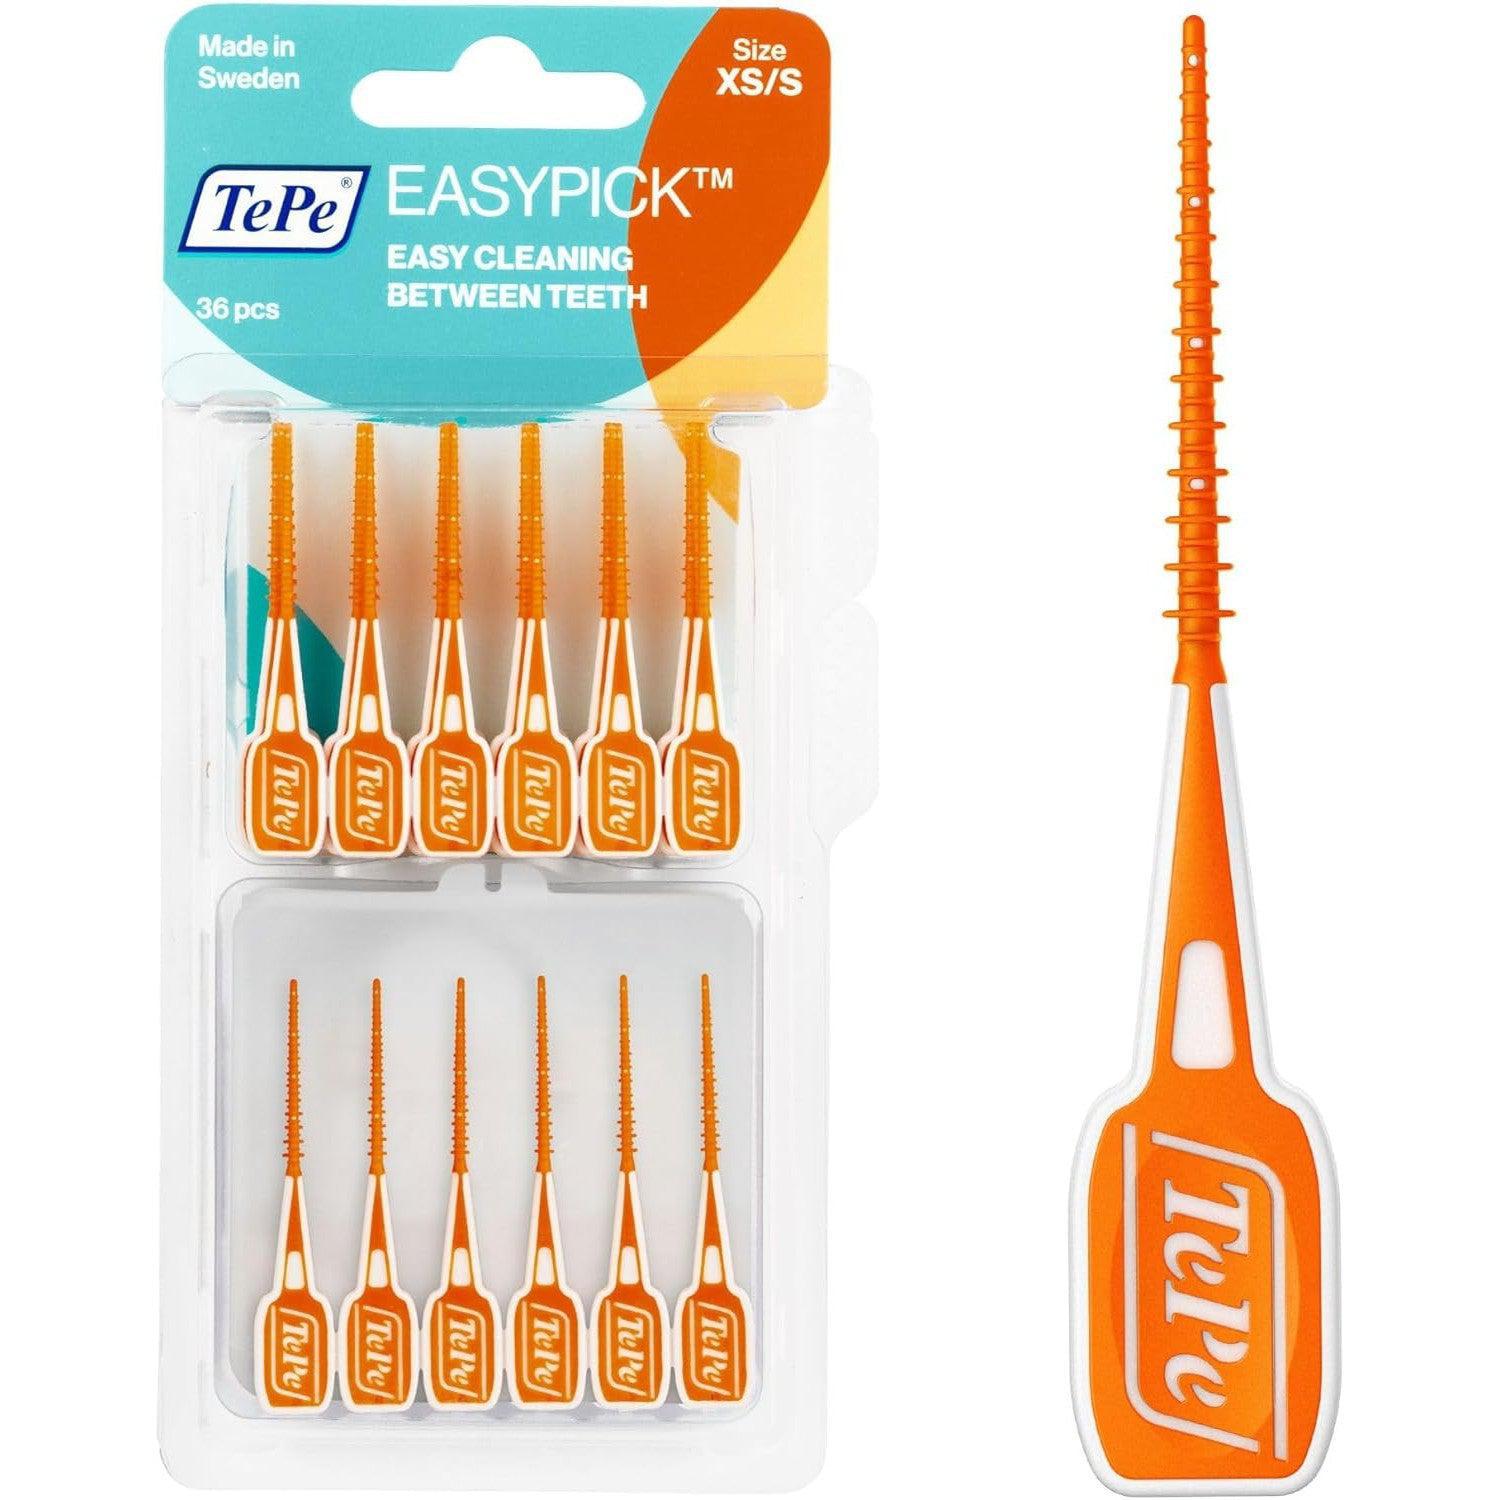 TePe Easypick Dental Picks, Size XS/S, Orange, Pack of 36